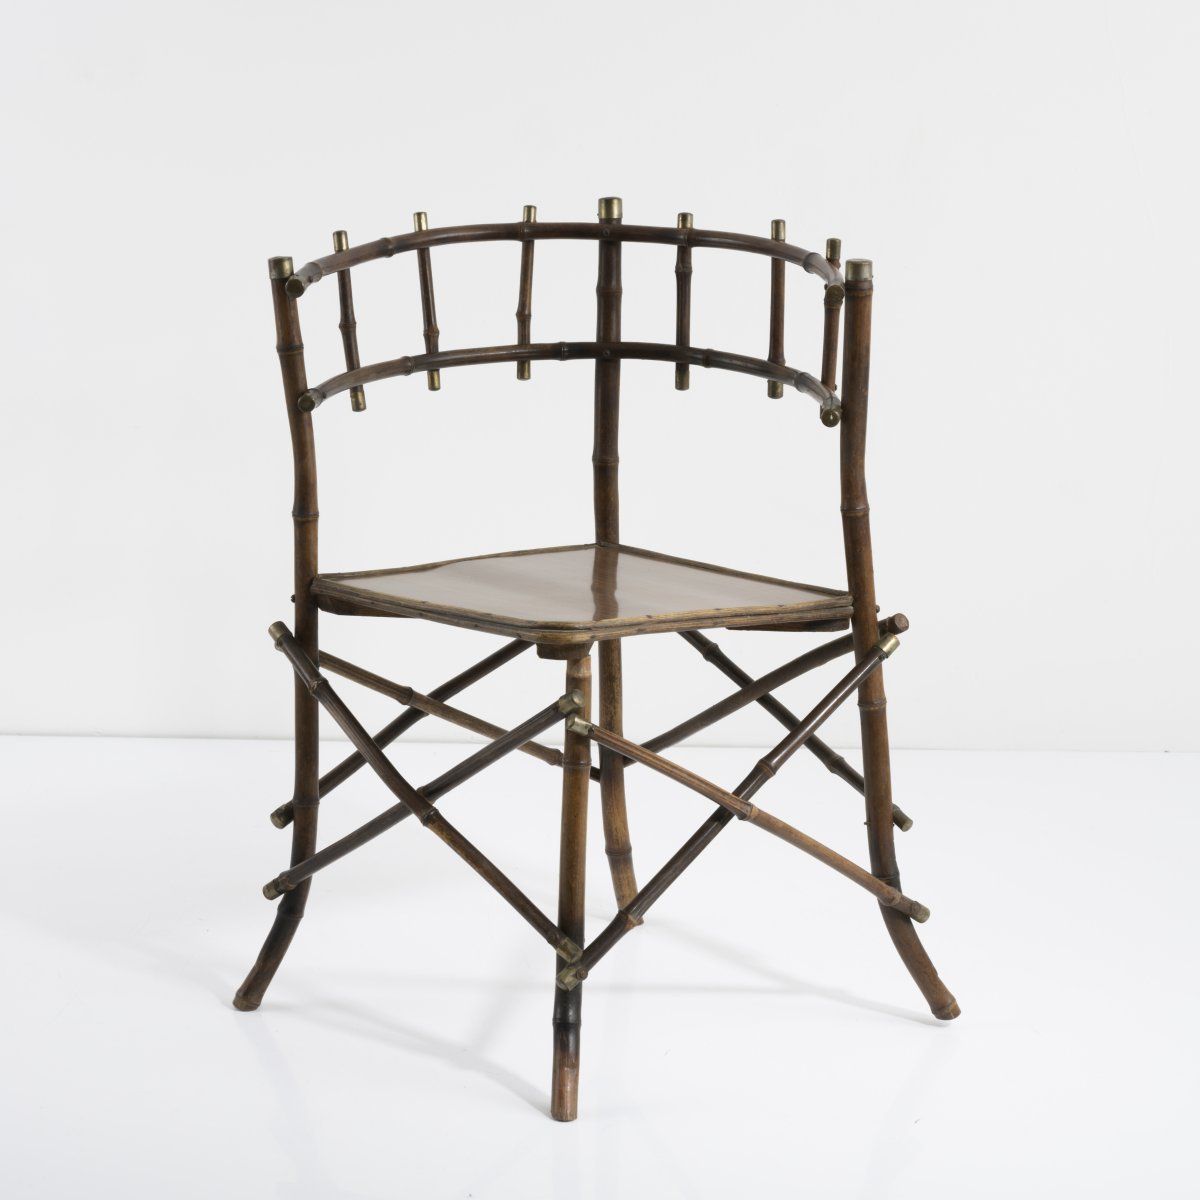 Null 英国，扶手椅，1880年代，高75.5 x 46 x 48厘米。竹制藤条，染成深色，座椅由带有木头图案的塑料层压板制成，木头，铜板。座椅被替换。